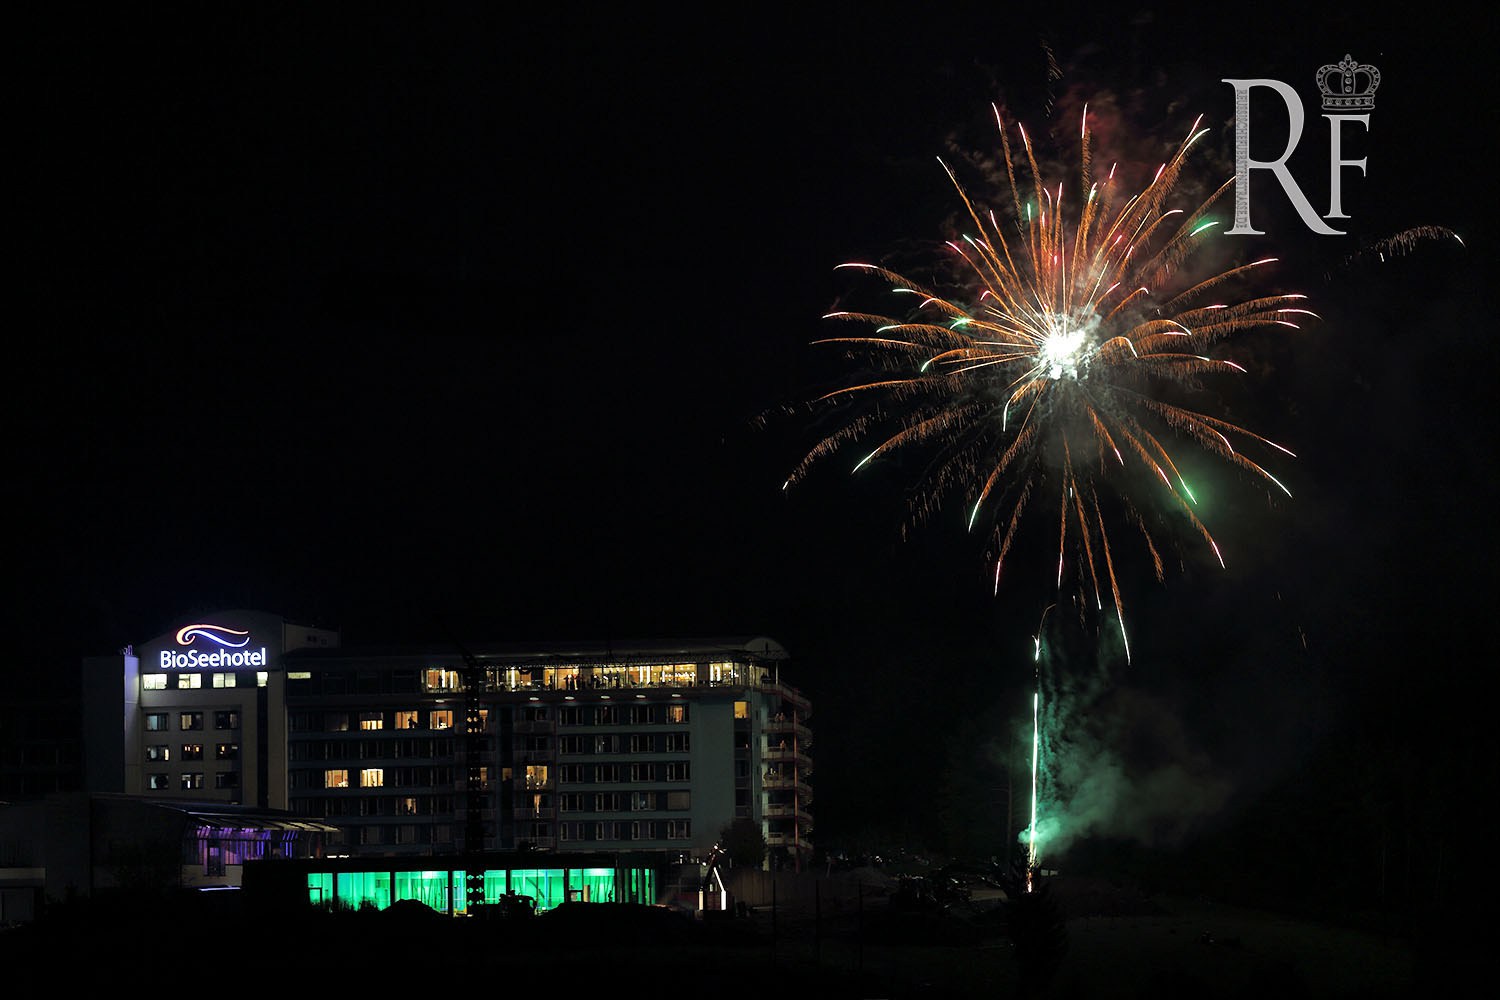 Feuerwerk zur Eröffnung des Panorama Spa im Bio-Seehotel Zeulenroda